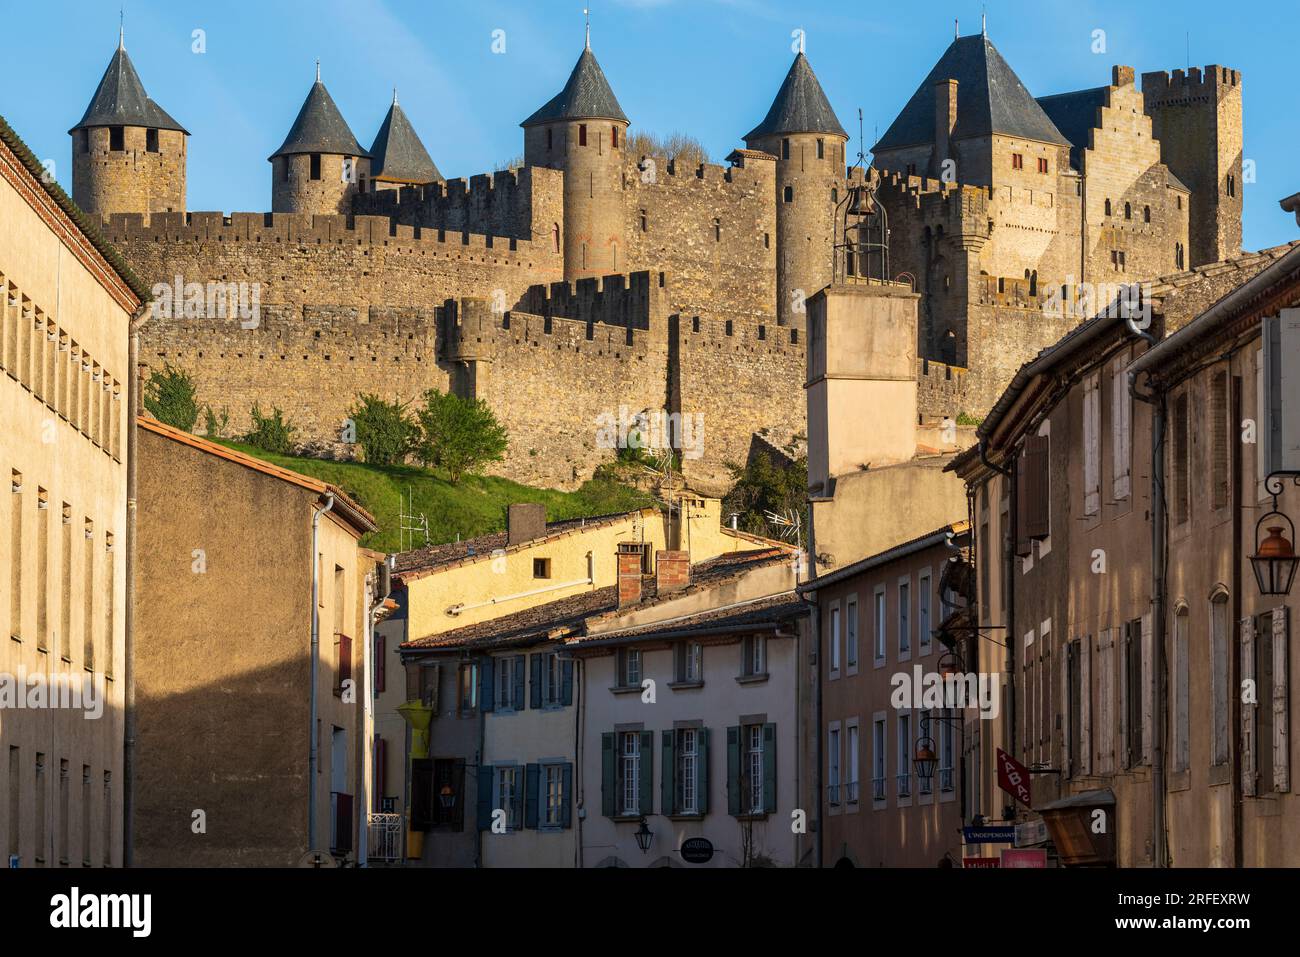 France, Aude, Carcassonne, cité médiévale classée au patrimoine mondial de l'UNESCO, les remparts de la ville Banque D'Images